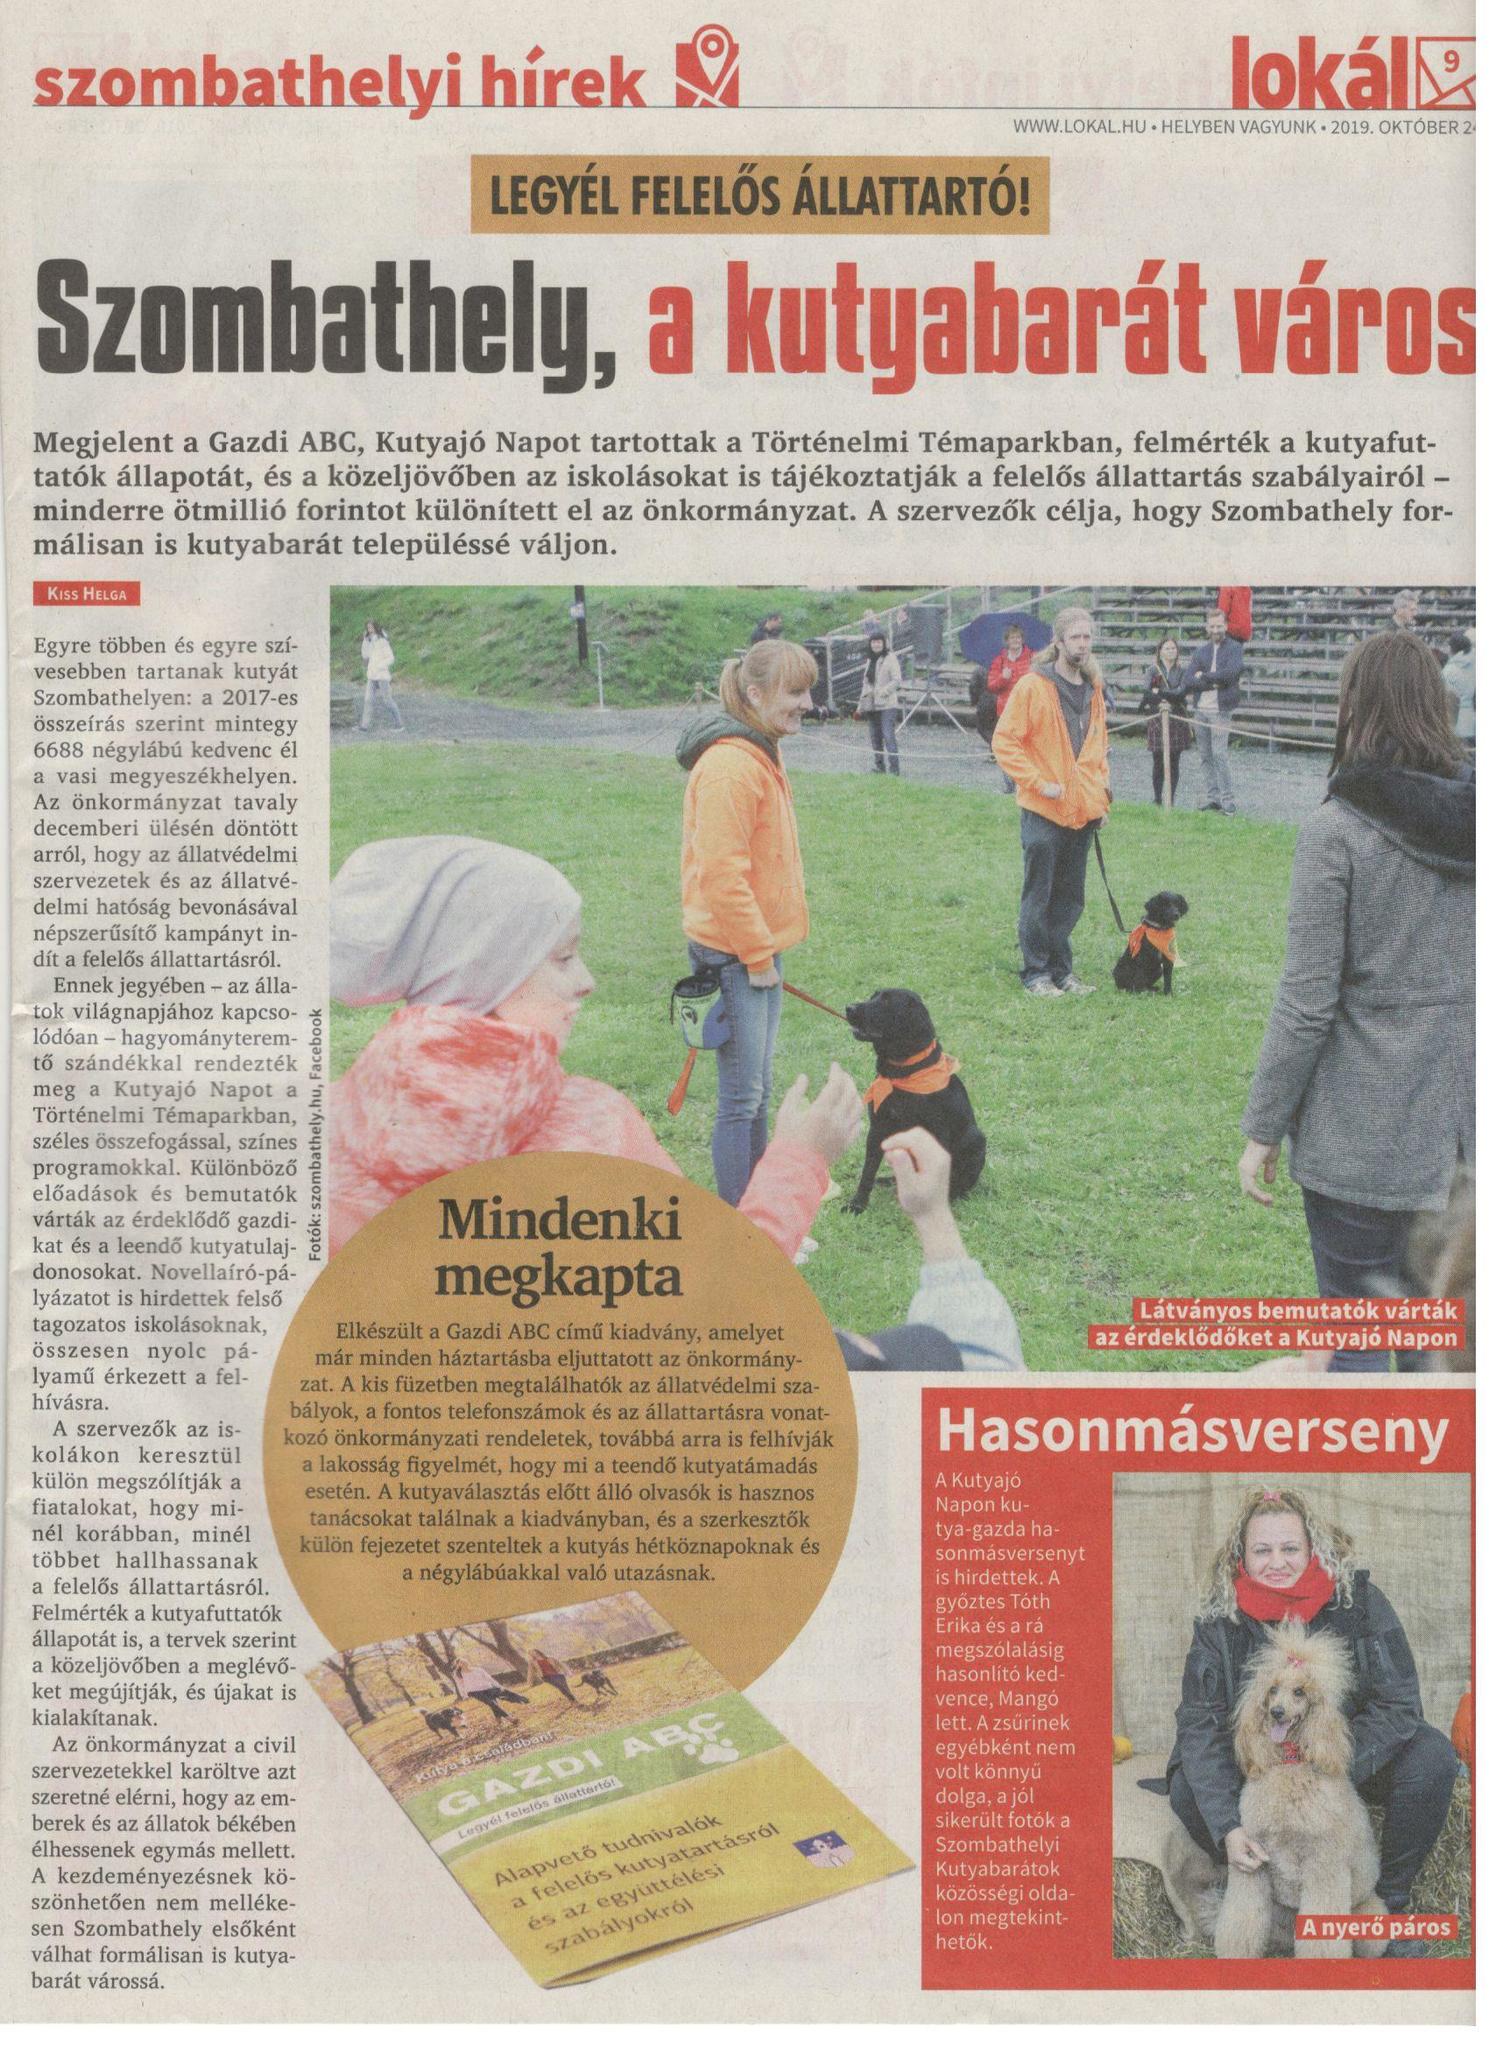 Lokál - Szombathely, kutyabarát város újság megjelenés